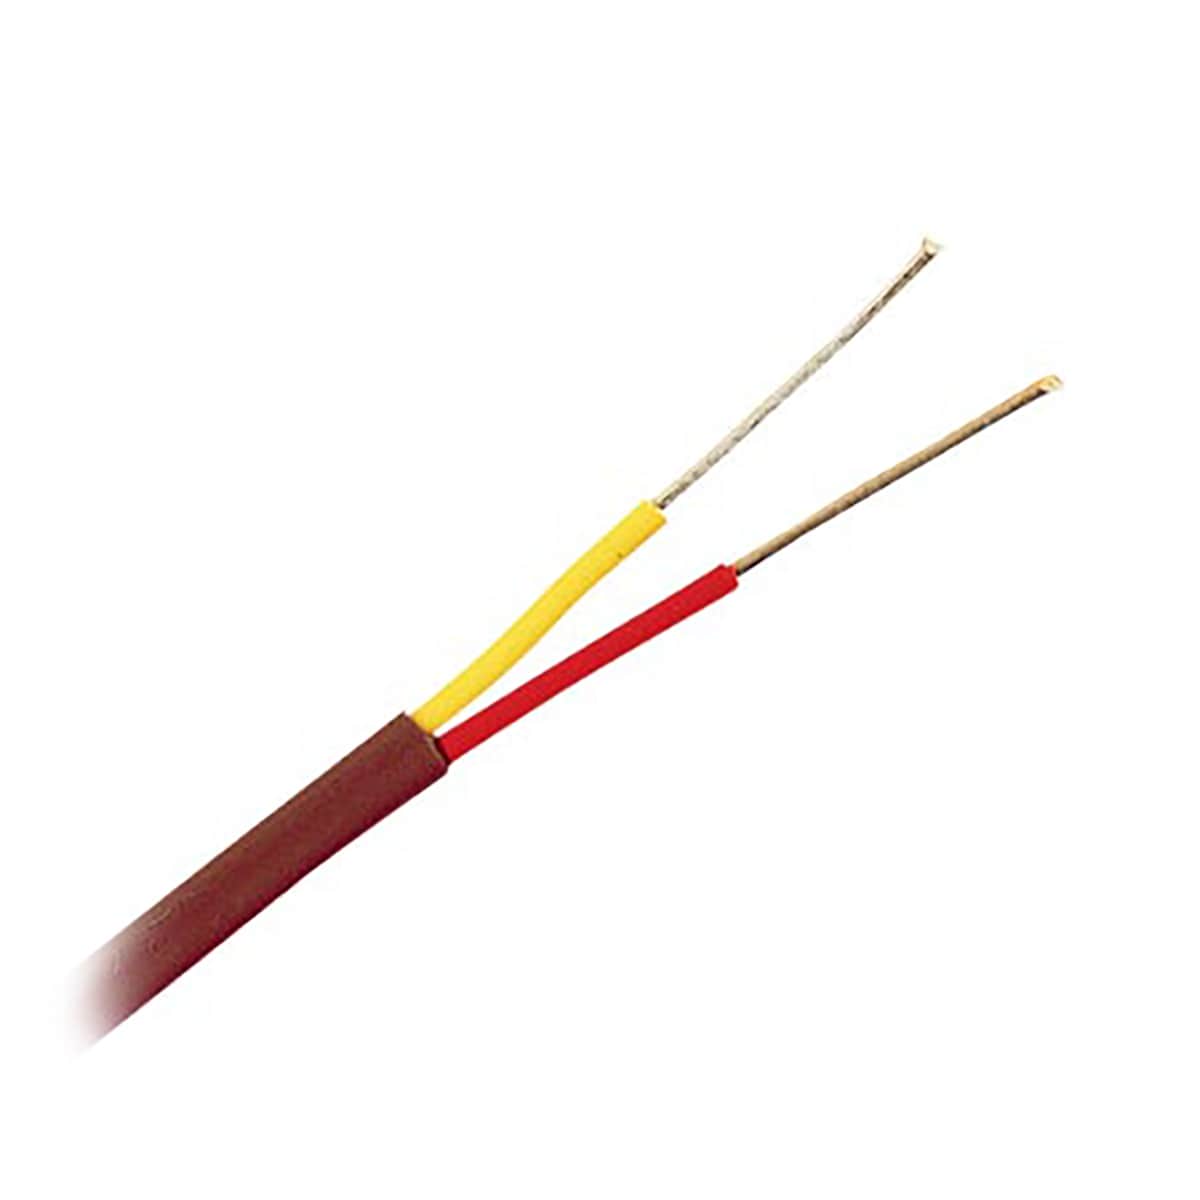 X-DREE K type de haute performance thermomètre thermocouple Fil essentiel câble Smpw-k-m connecteur bien fait Orange cfa-cf-e9-6d5